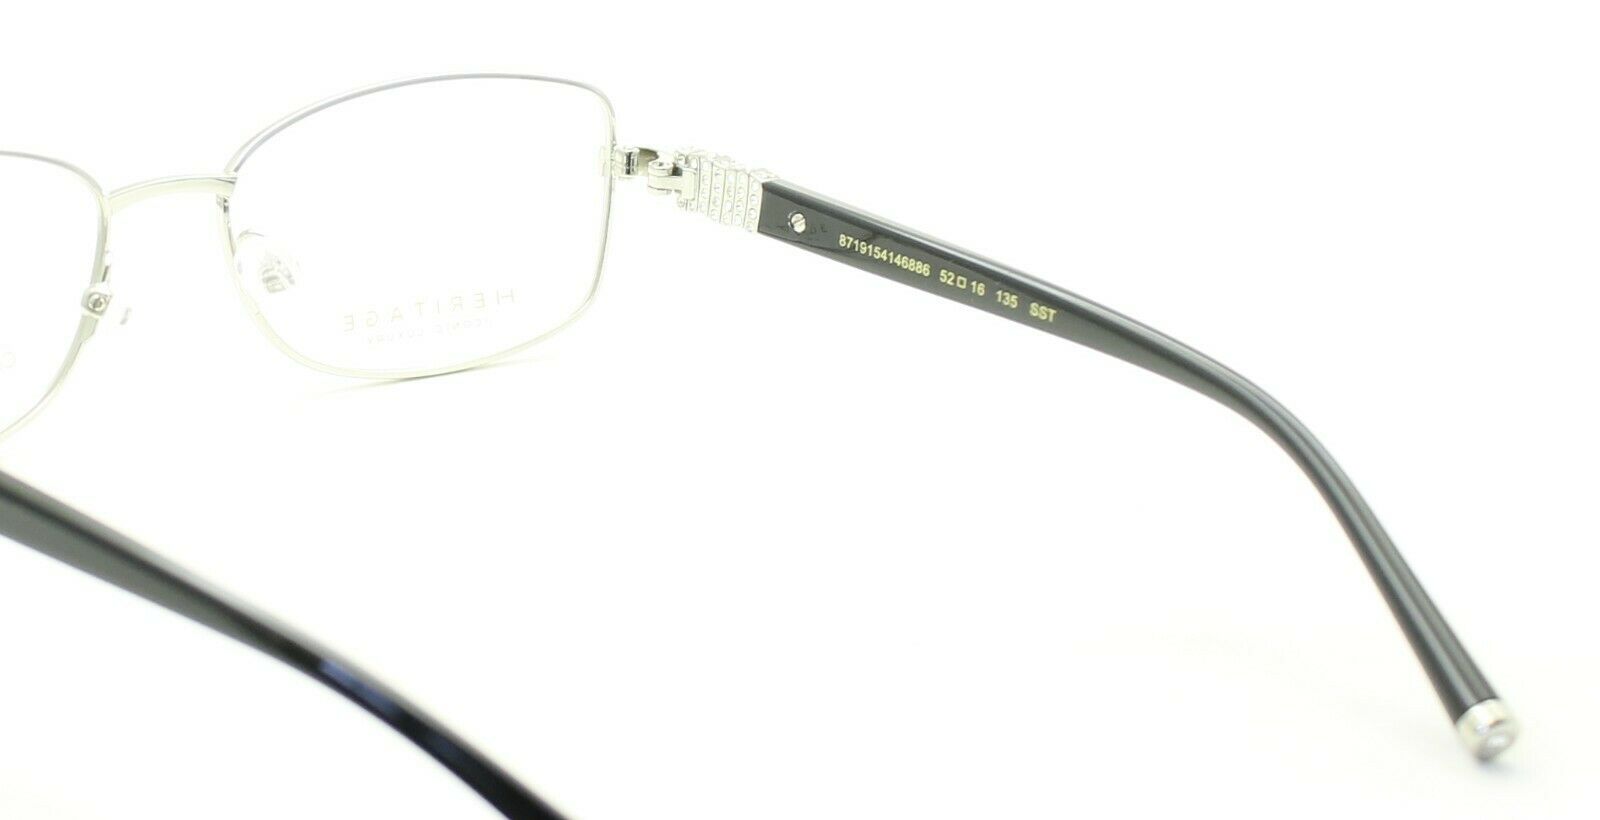 HERITAGE Iconic Luxury HEDF24 SS Eyewear FRAMES Eyeglasses RX Optical Glasses